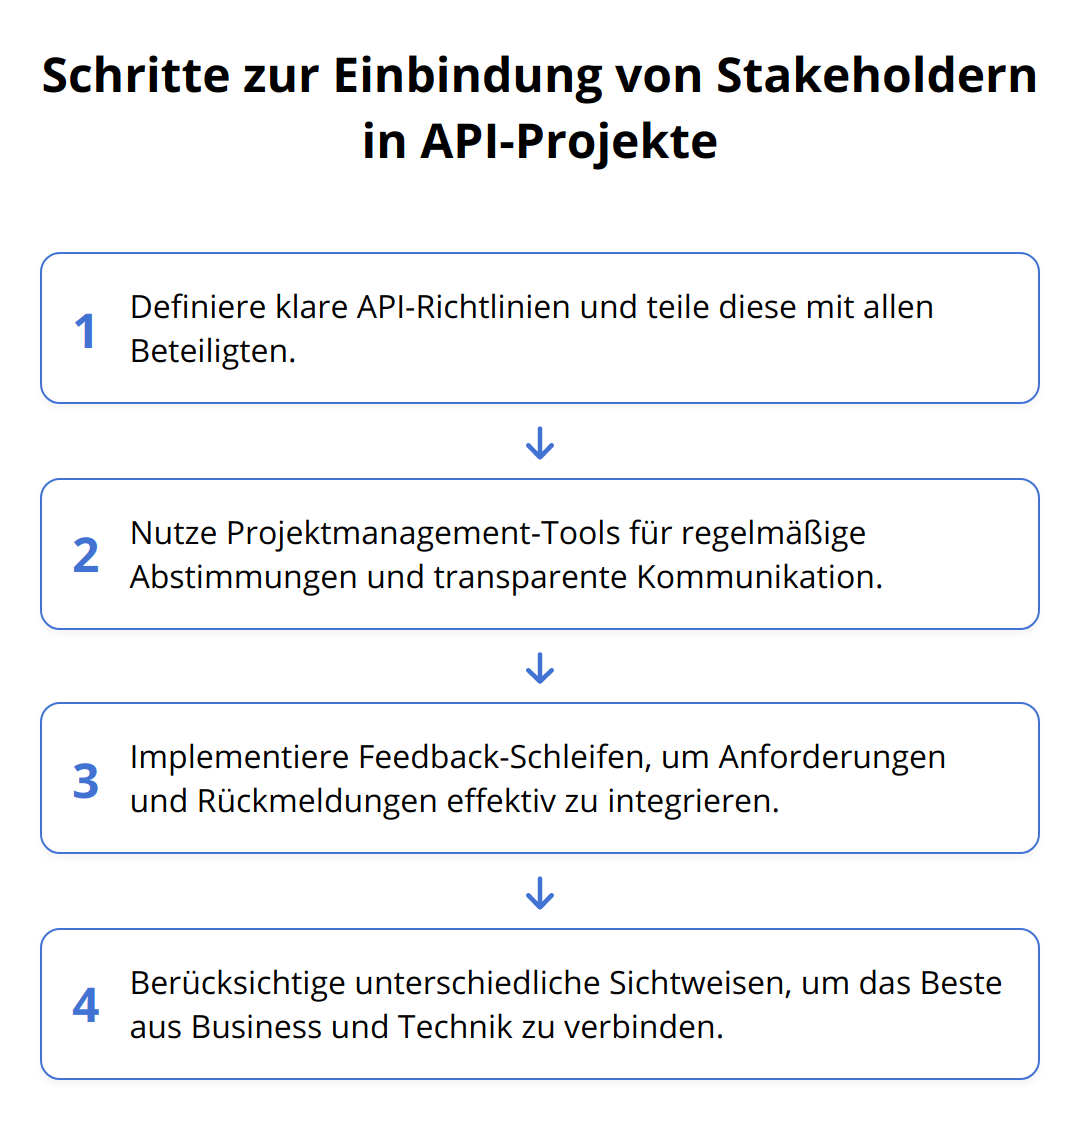 Flow Chart - Schritte zur Einbindung von Stakeholdern in API-Projekte